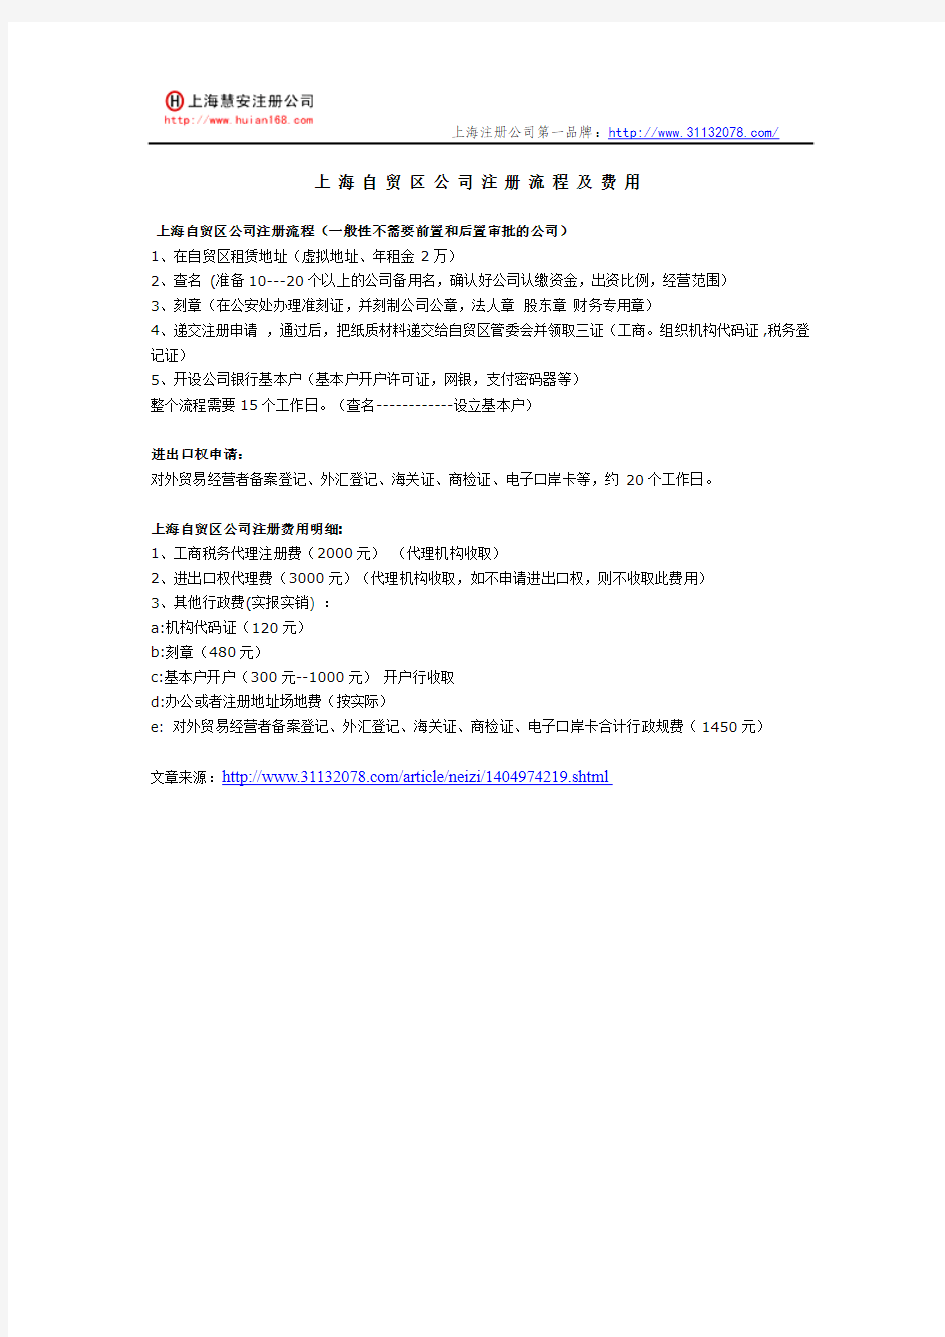 上海自贸区公司注册流程及费用